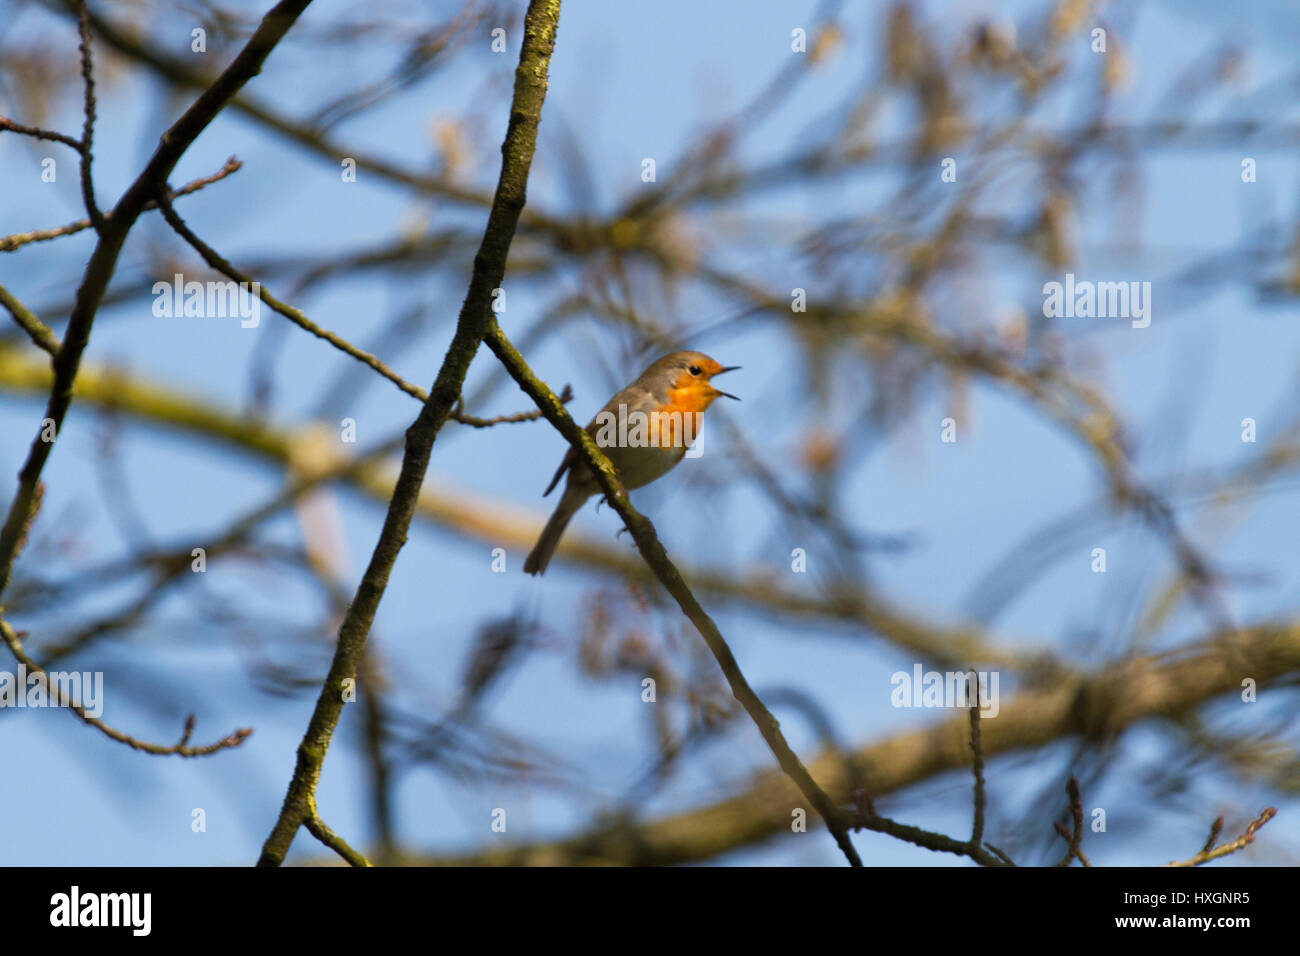 Robin singing in a tree, its beak wide open Stock Photo